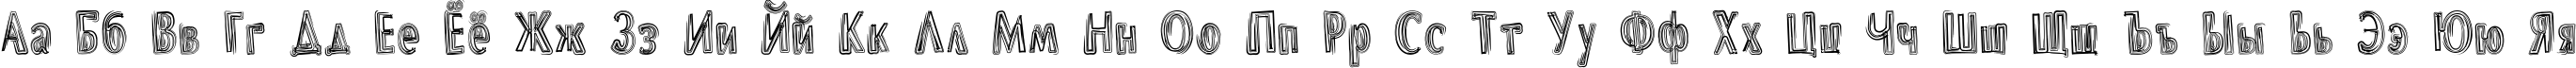 Пример написания русского алфавита шрифтом DS Brushes Normal